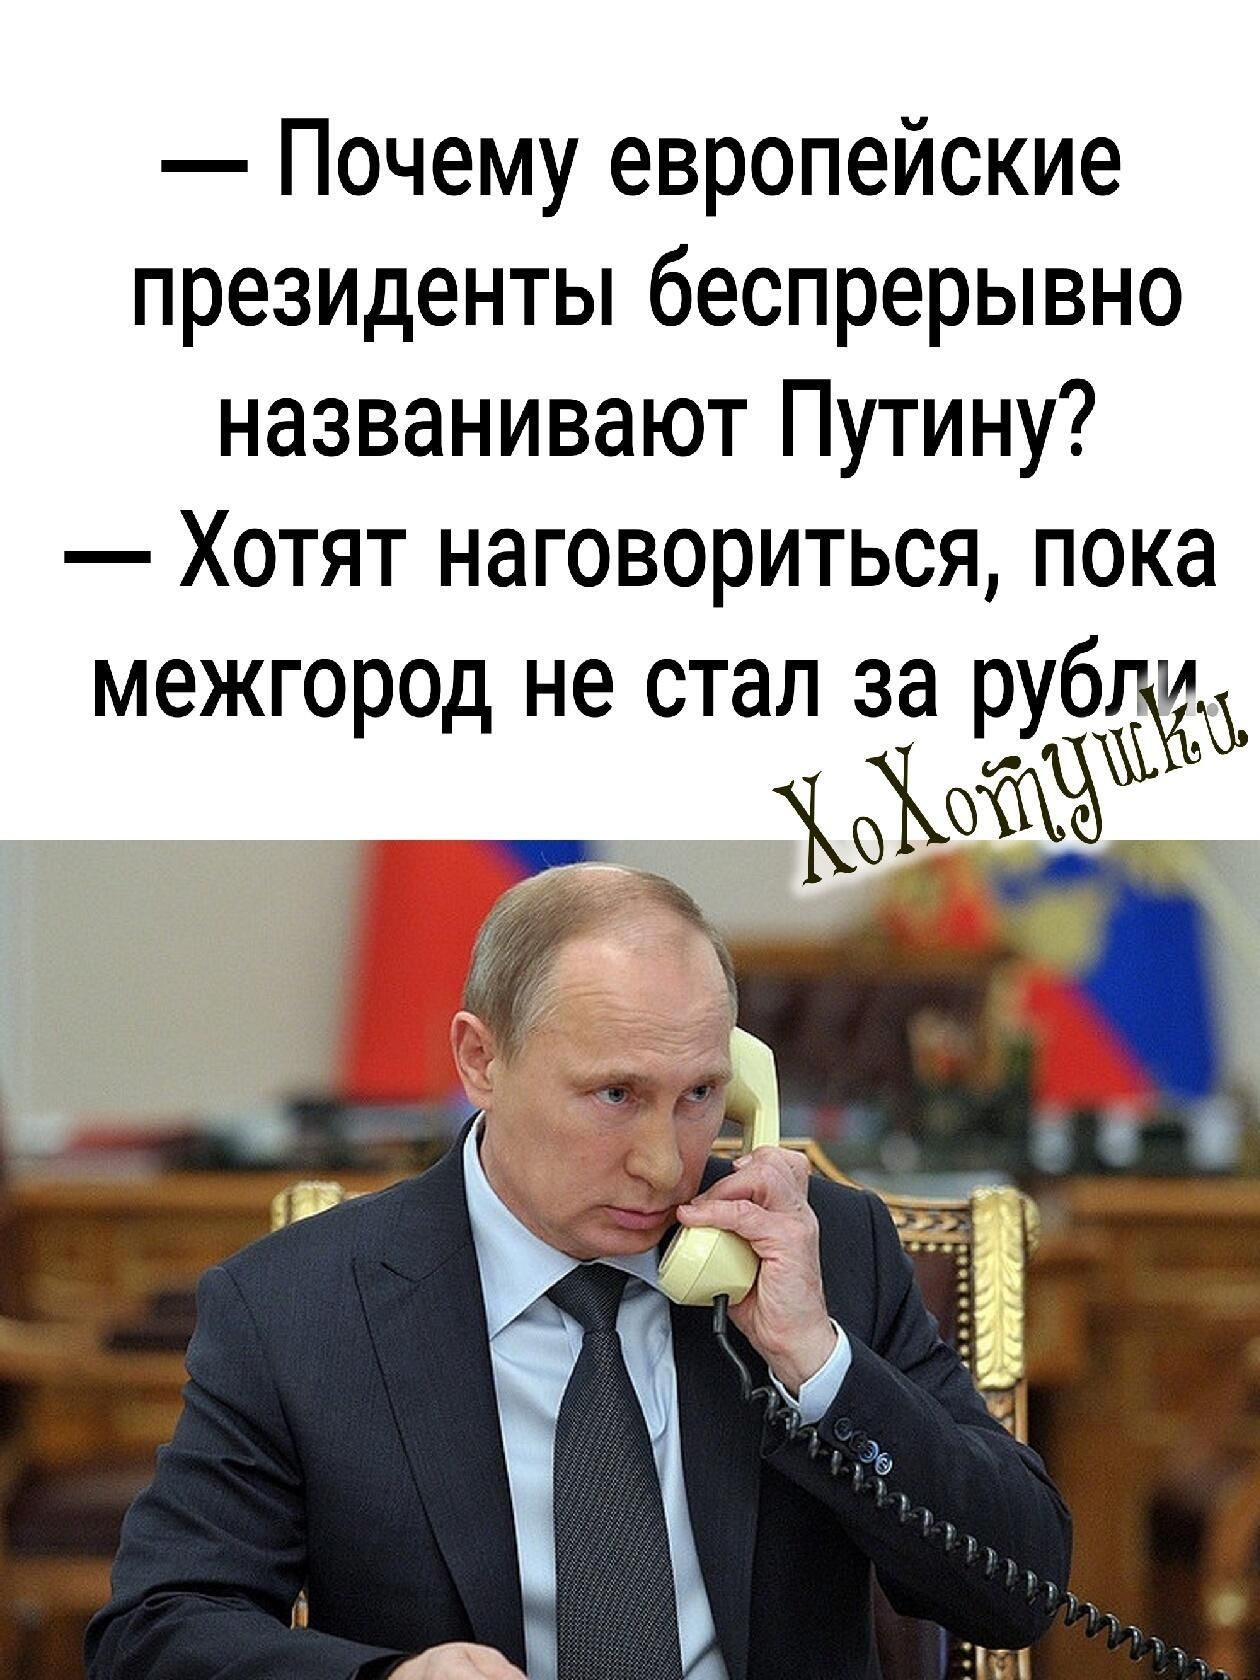 Почему европейские президенты беспрерывно названивают Путину Хотят наговориться пока г н т п и меж ород е с а за рубд ым _ г _ _